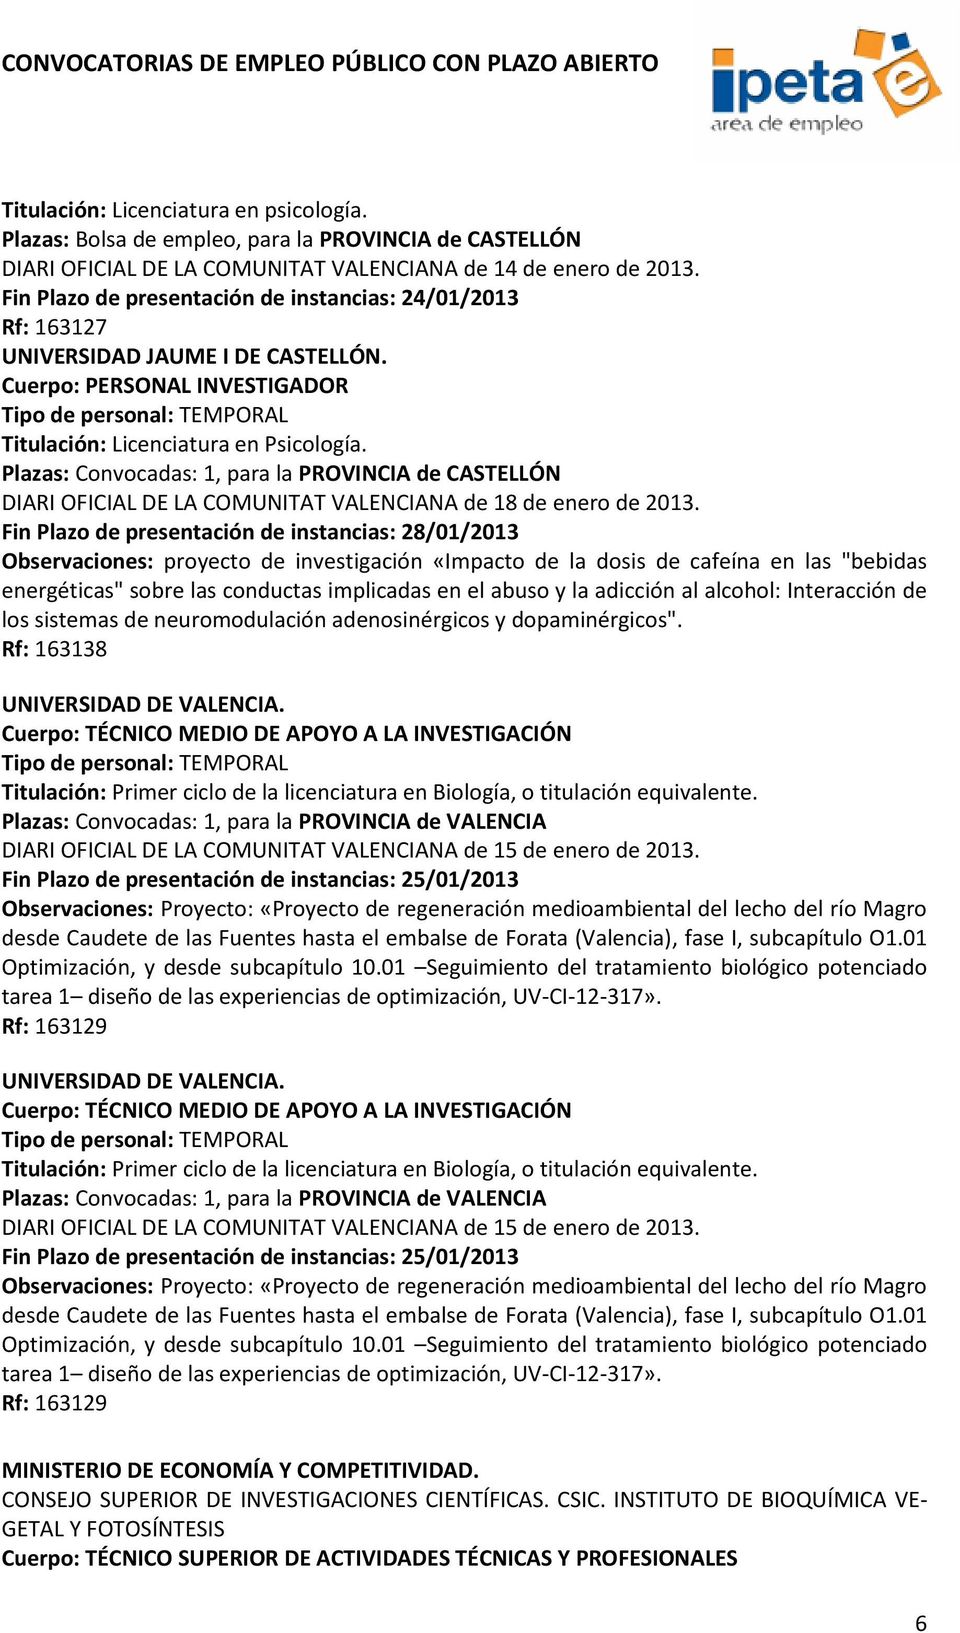 Plazas: Convocadas: 1, para la PROVINCIA de CASTELLÓN DIARI OFICIAL DE LA COMUNITAT VALENCIANA de 18 de enero de 2013.